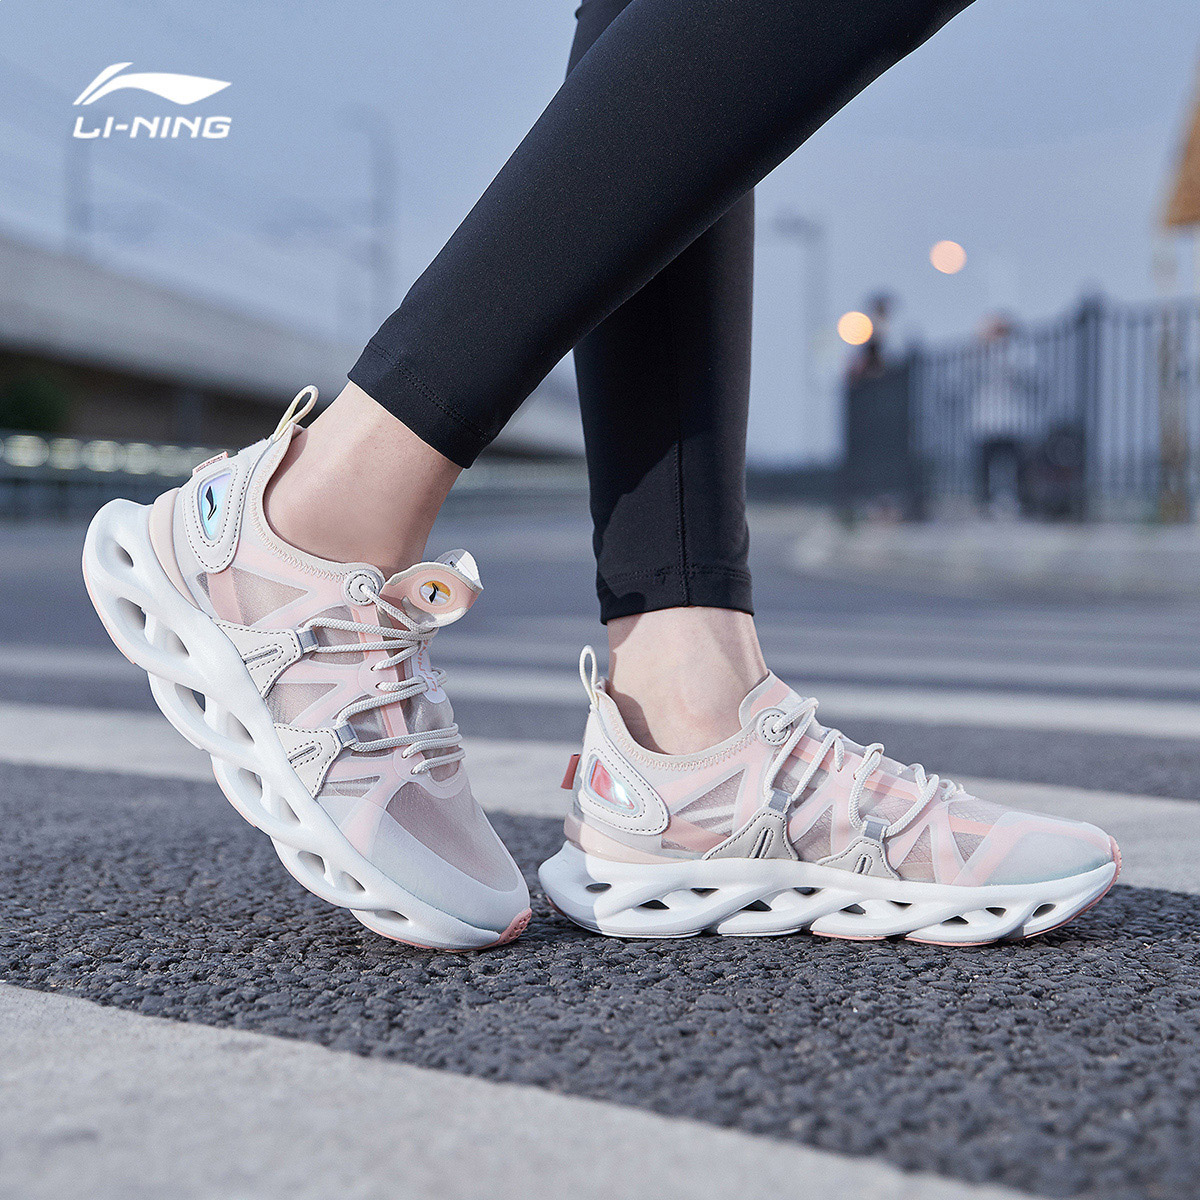 李宁跑步鞋女鞋2020新款李宁弧减震回弹跑鞋女士低帮运动鞋,降价幅度20%